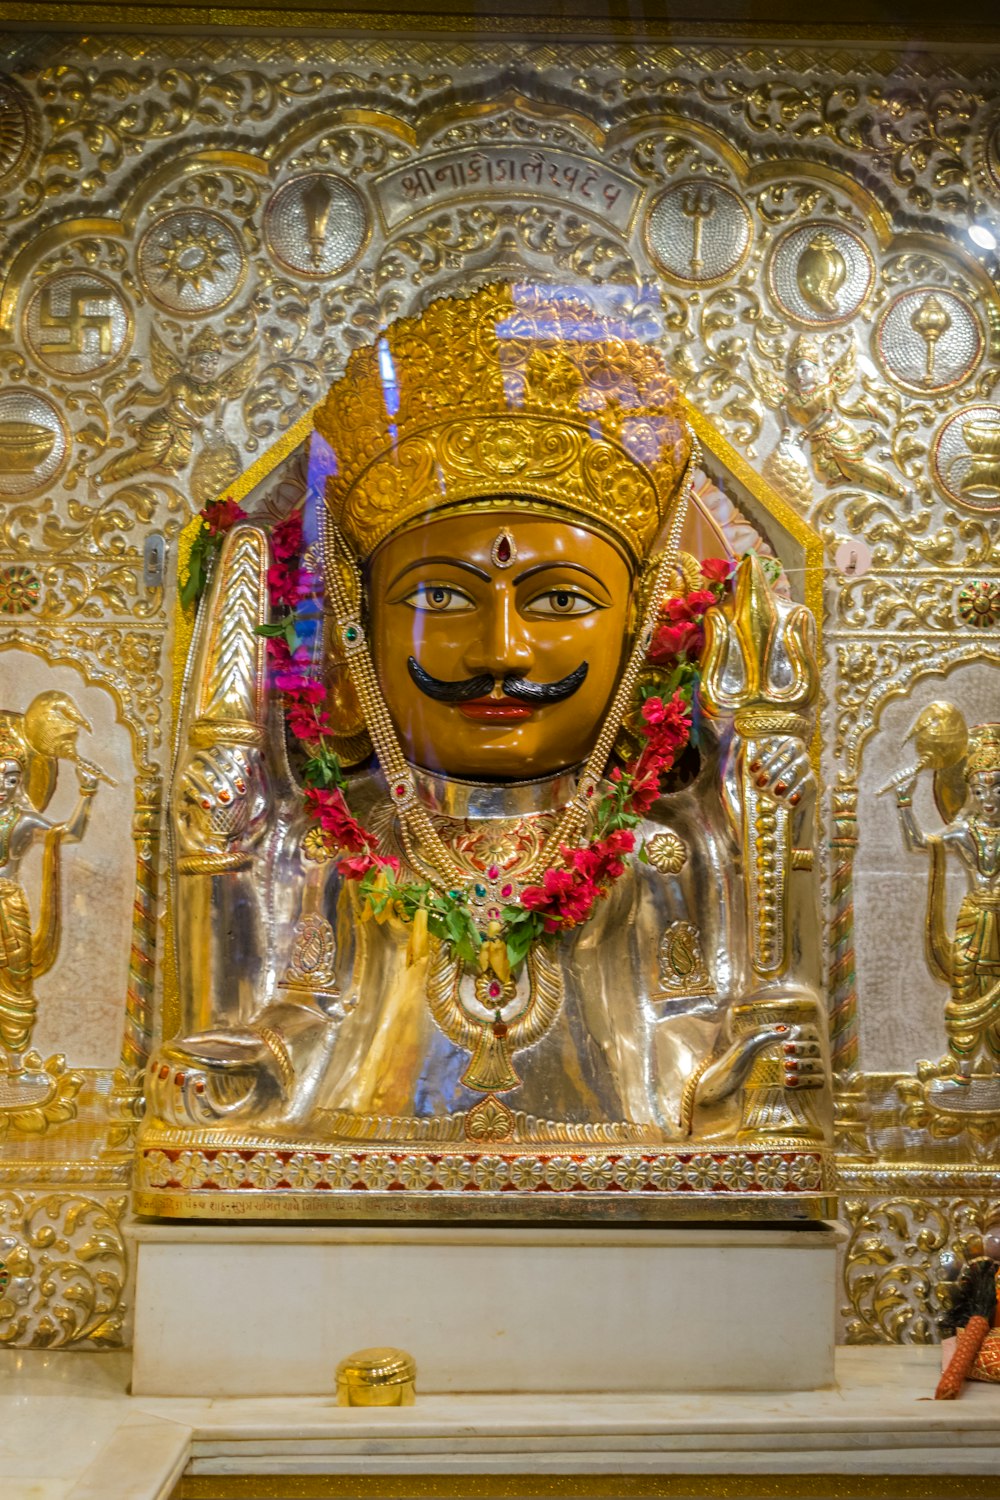 uma estátua de uma pessoa em uma roupa dourada